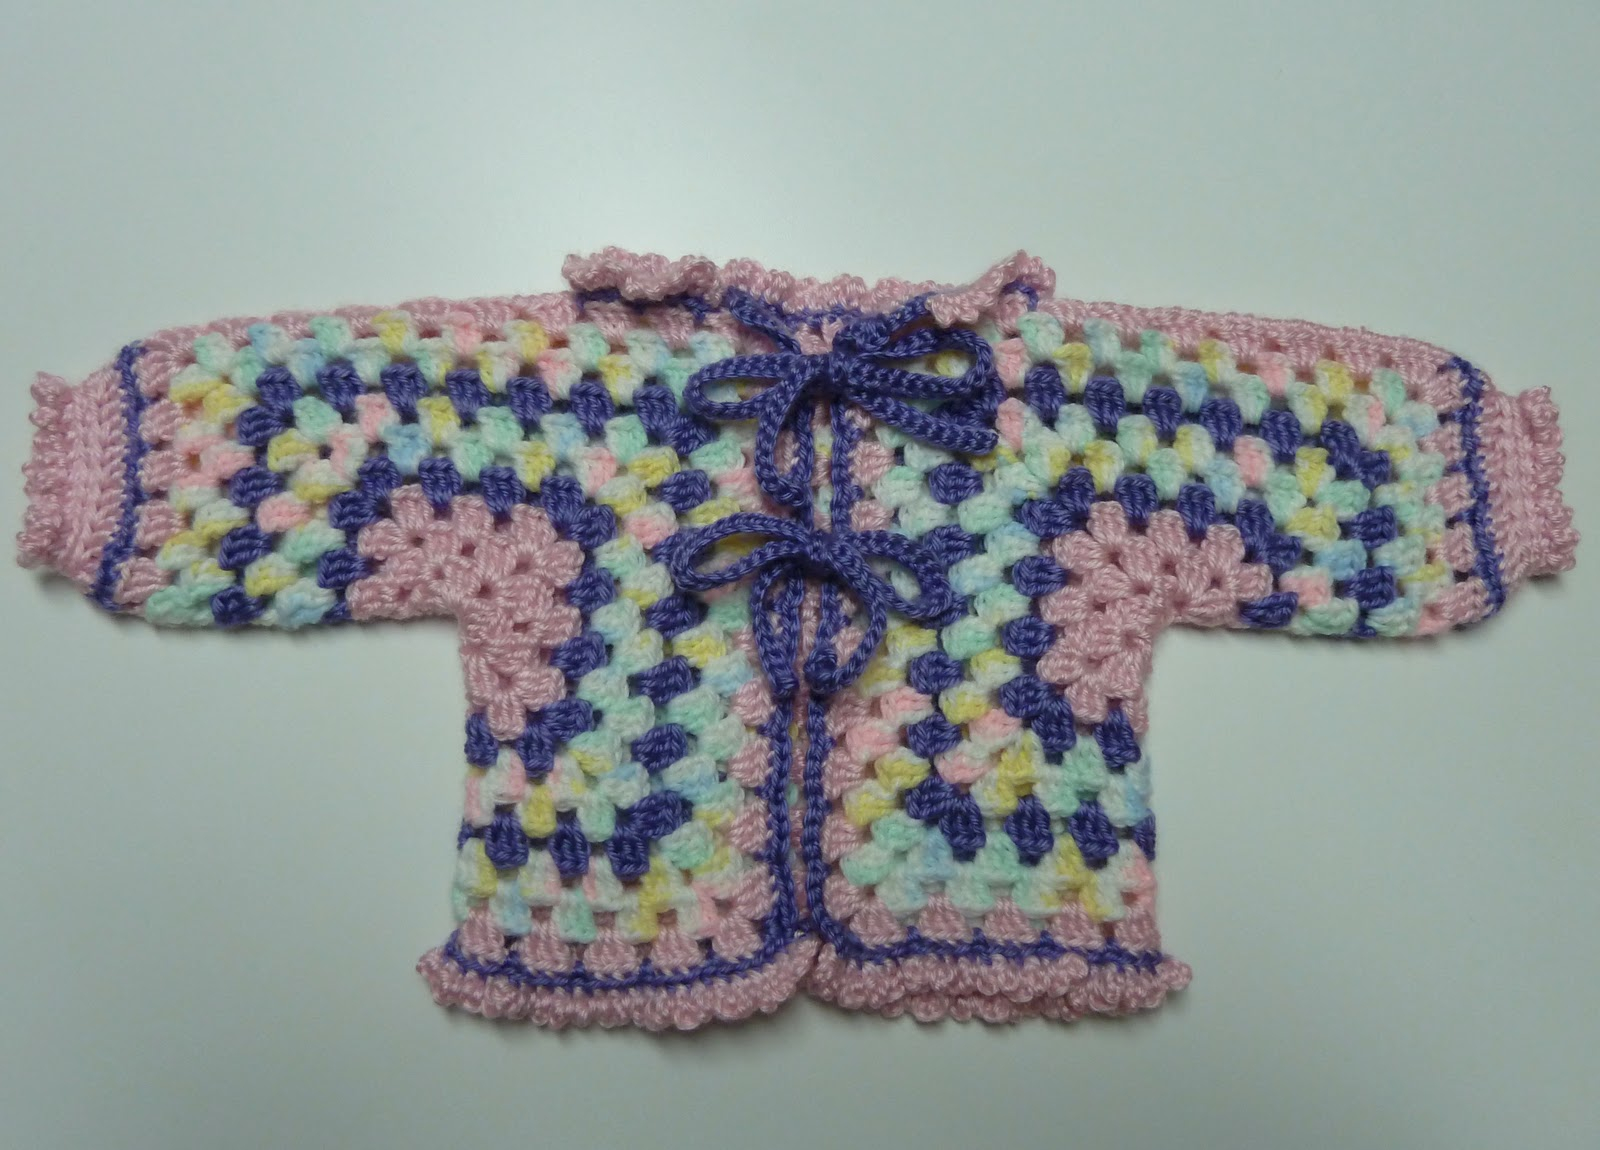 Crochet Pattern Central Ba Boy Crochet Sweater Crochet Learn How To Crochet